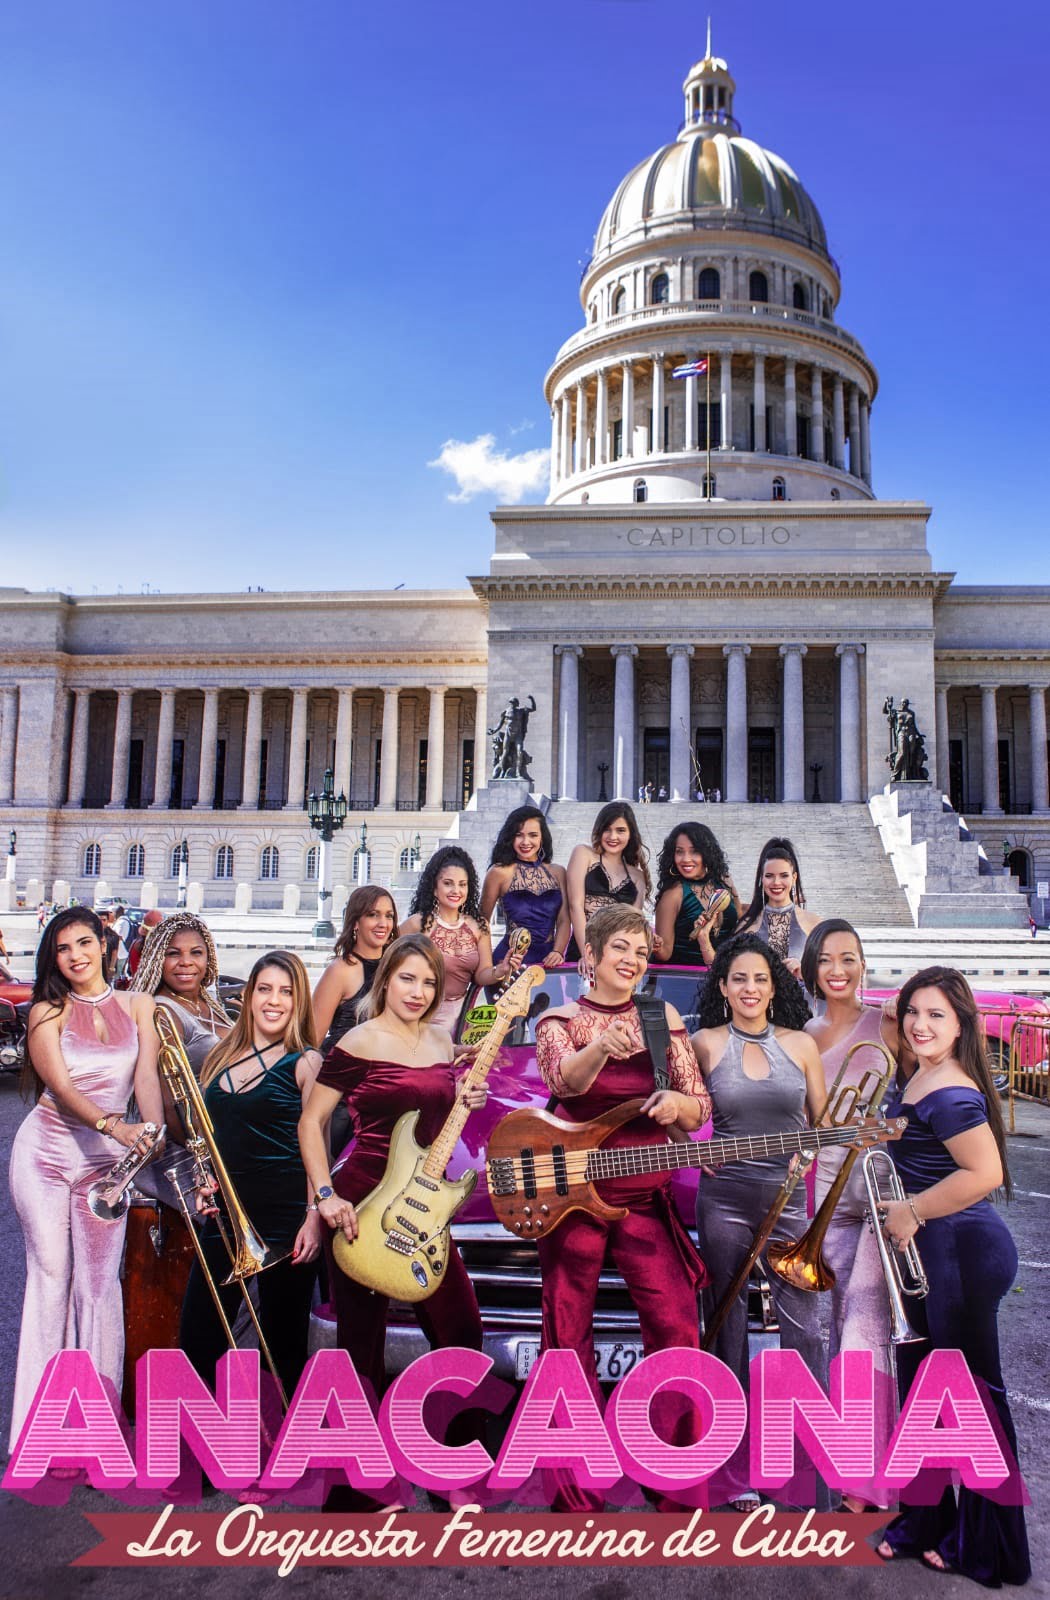 ANACAONA, con más de 85 años de trabajo ininterrumpido, se cuentabentre las agrupaciones de primer nivel de la música popular cubana y es considerada “La Orquesta Femenina Insigne de Cuba”.